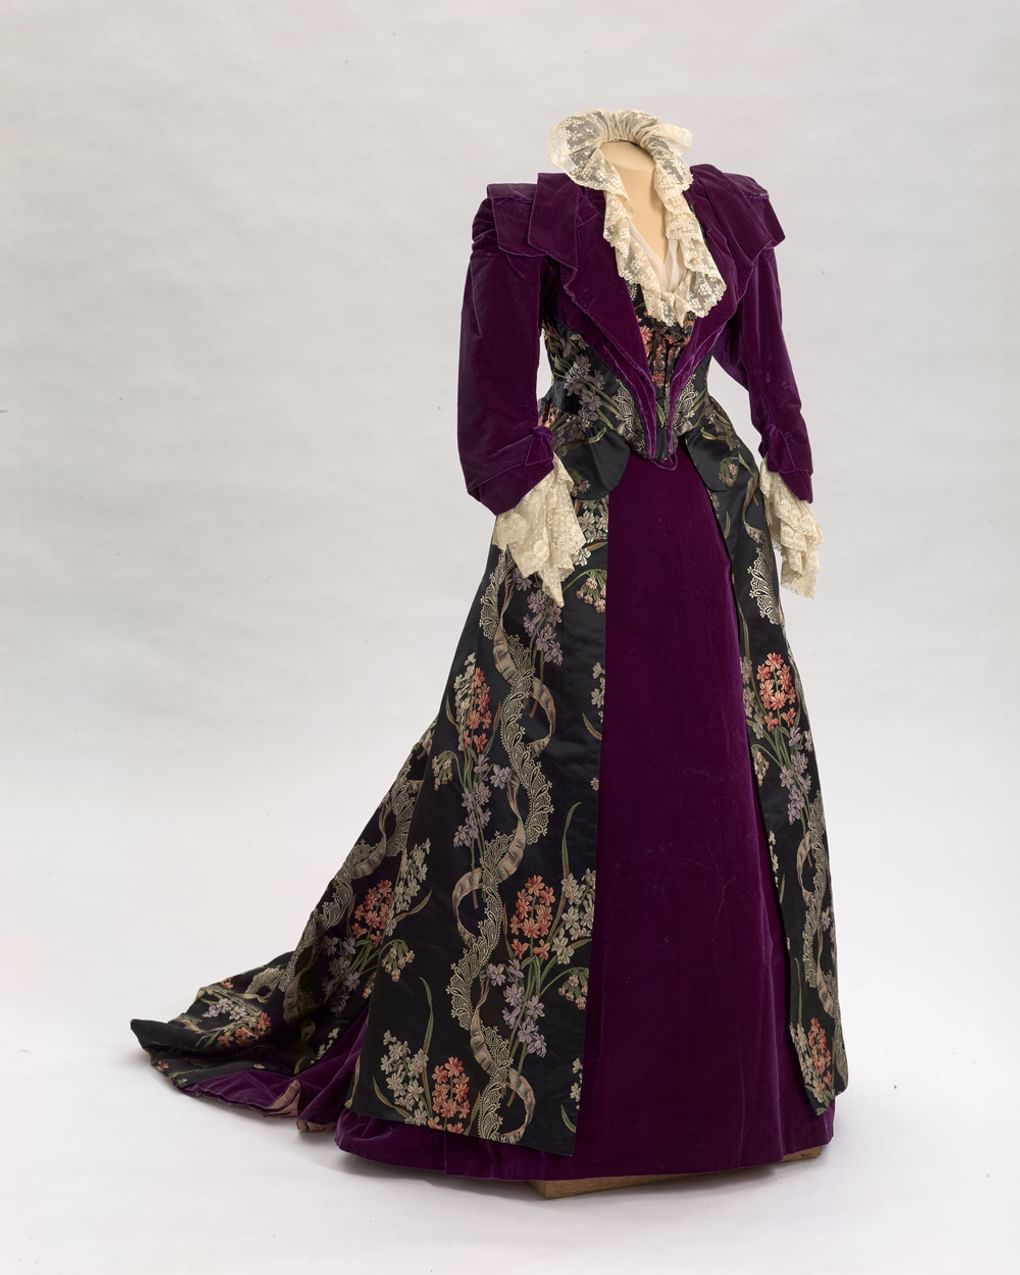 Платье (лиф и юбка) из лилового бархата, со шлейфом. XIX век. Государственный Эрмитаж, Санкт-Петербург